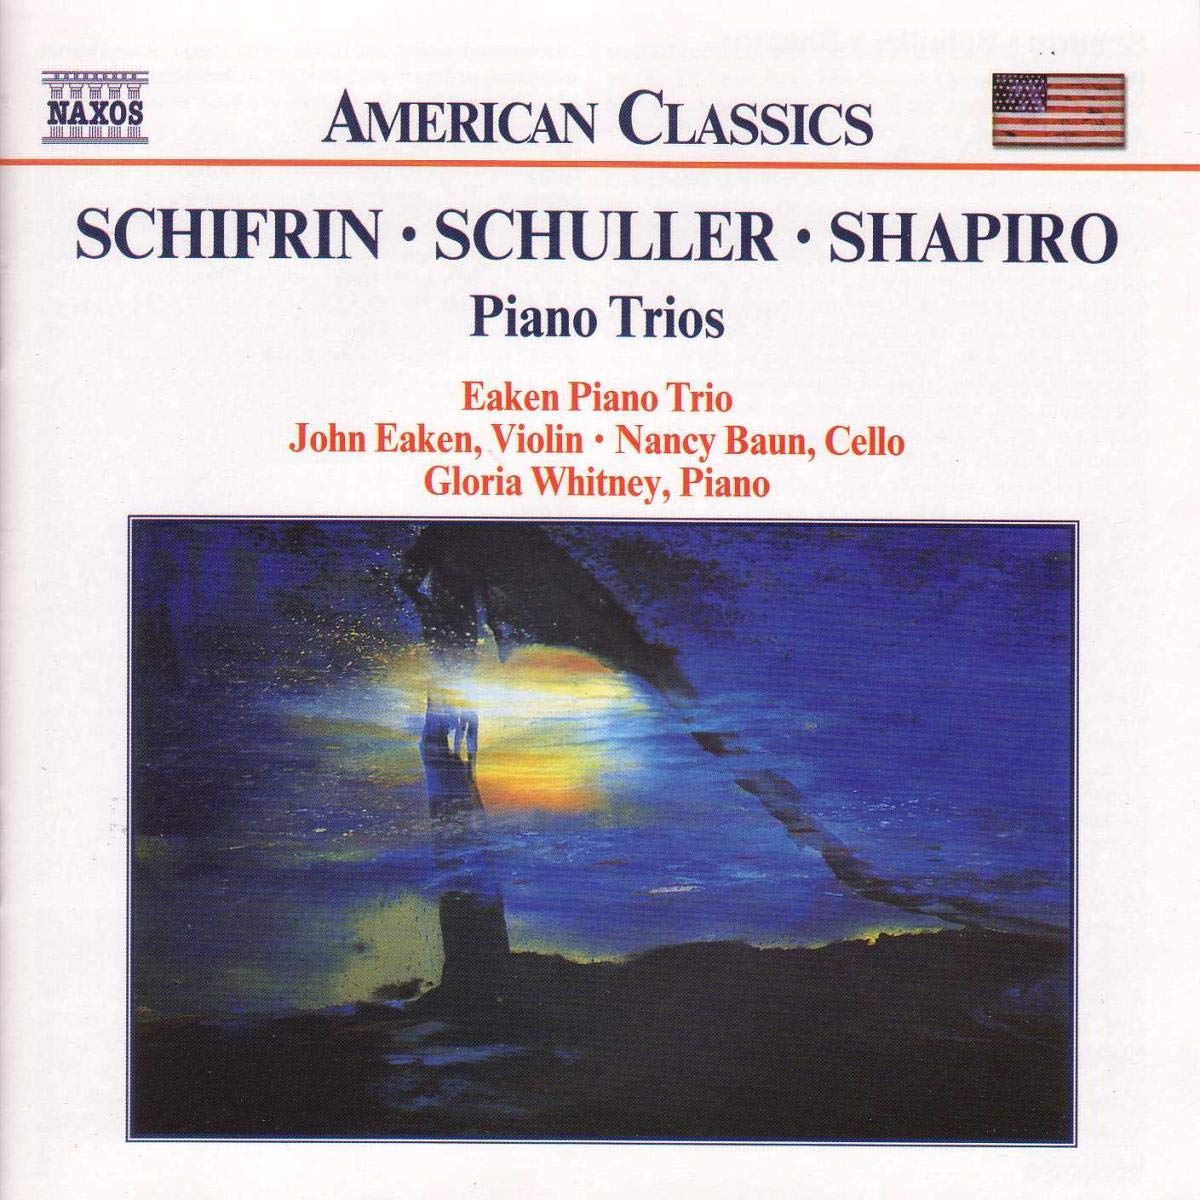 Schifrin / Schuller / Shapiro: Piano Trios